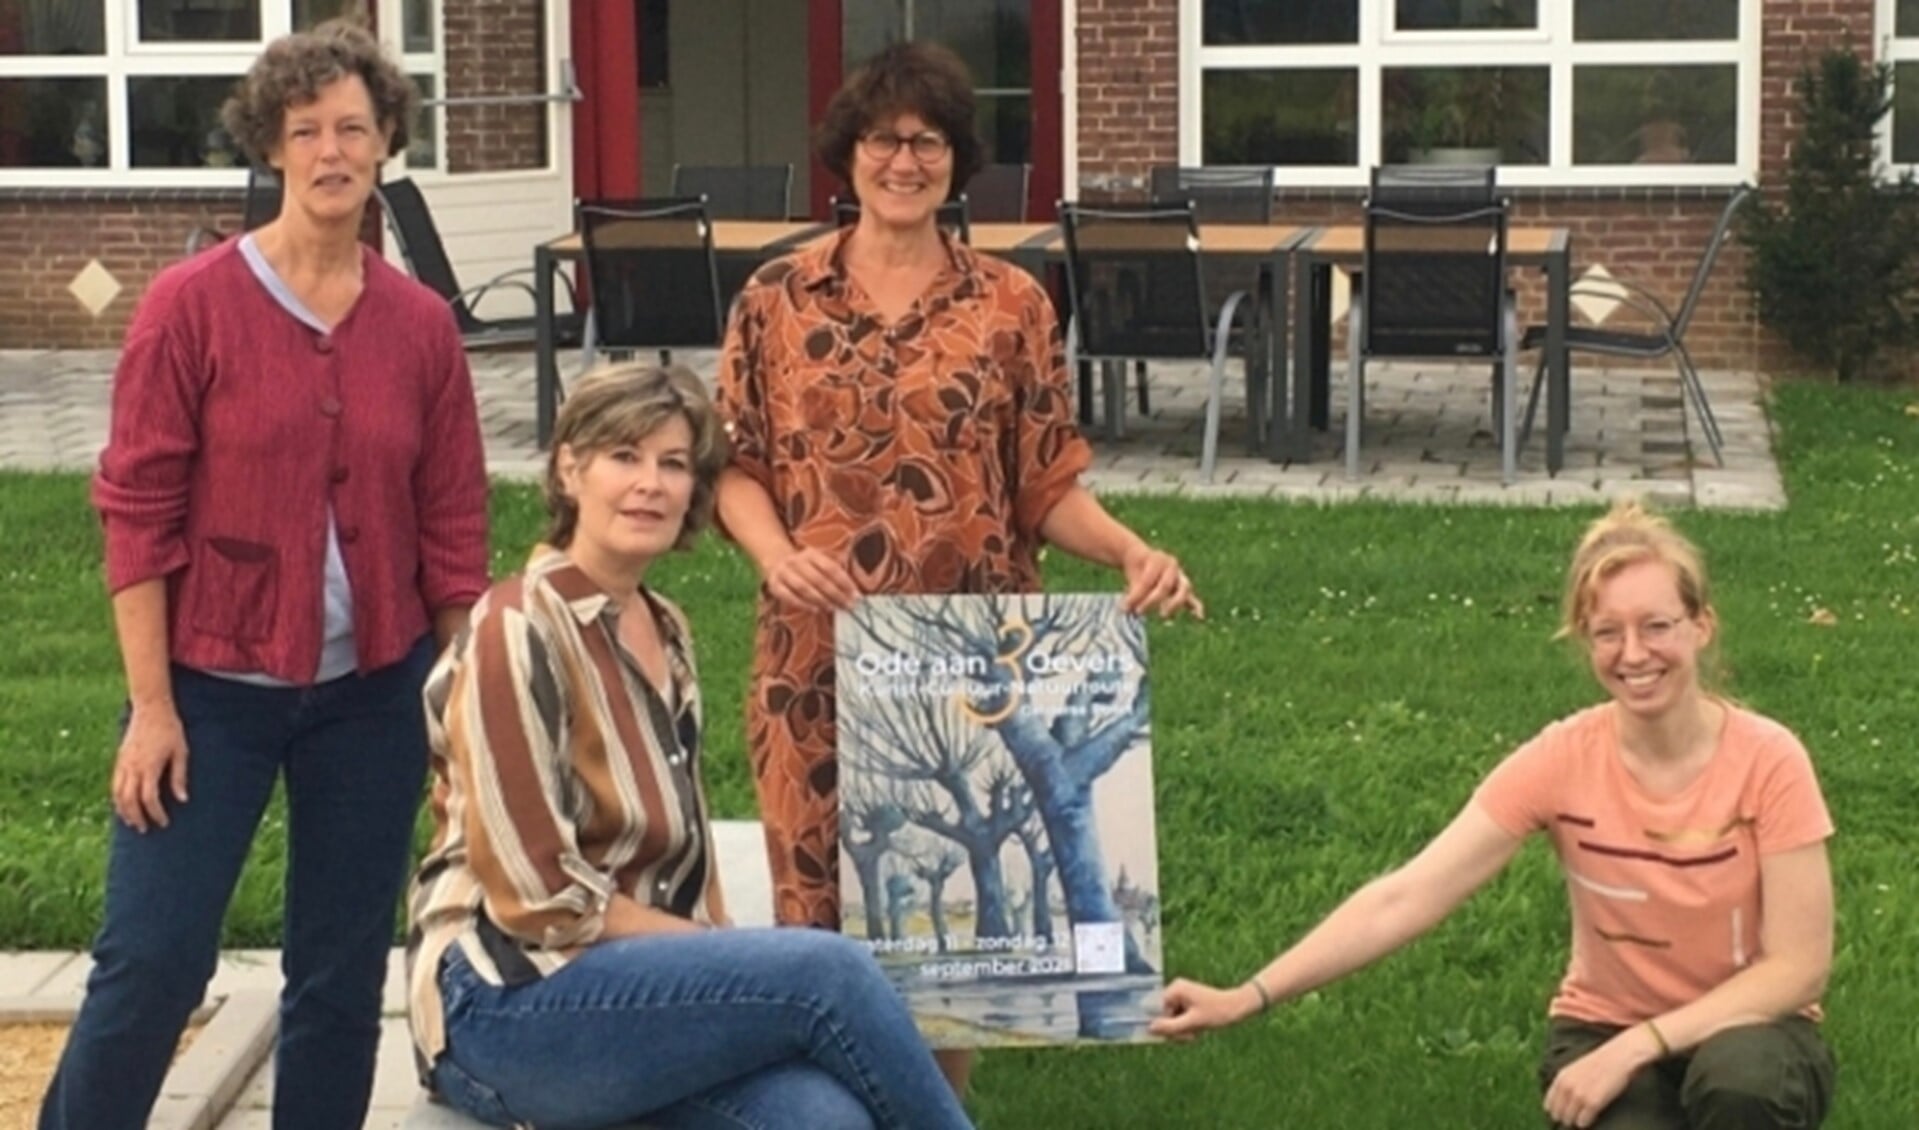 De kunstenaars die op 11 en 12 september exposeren in het Dorpshuis in Groessen. Vlnr: Marieke Laverman, Sabrine Swanenberg, Marjon Meulenbrugge en Marjolein Bartels.